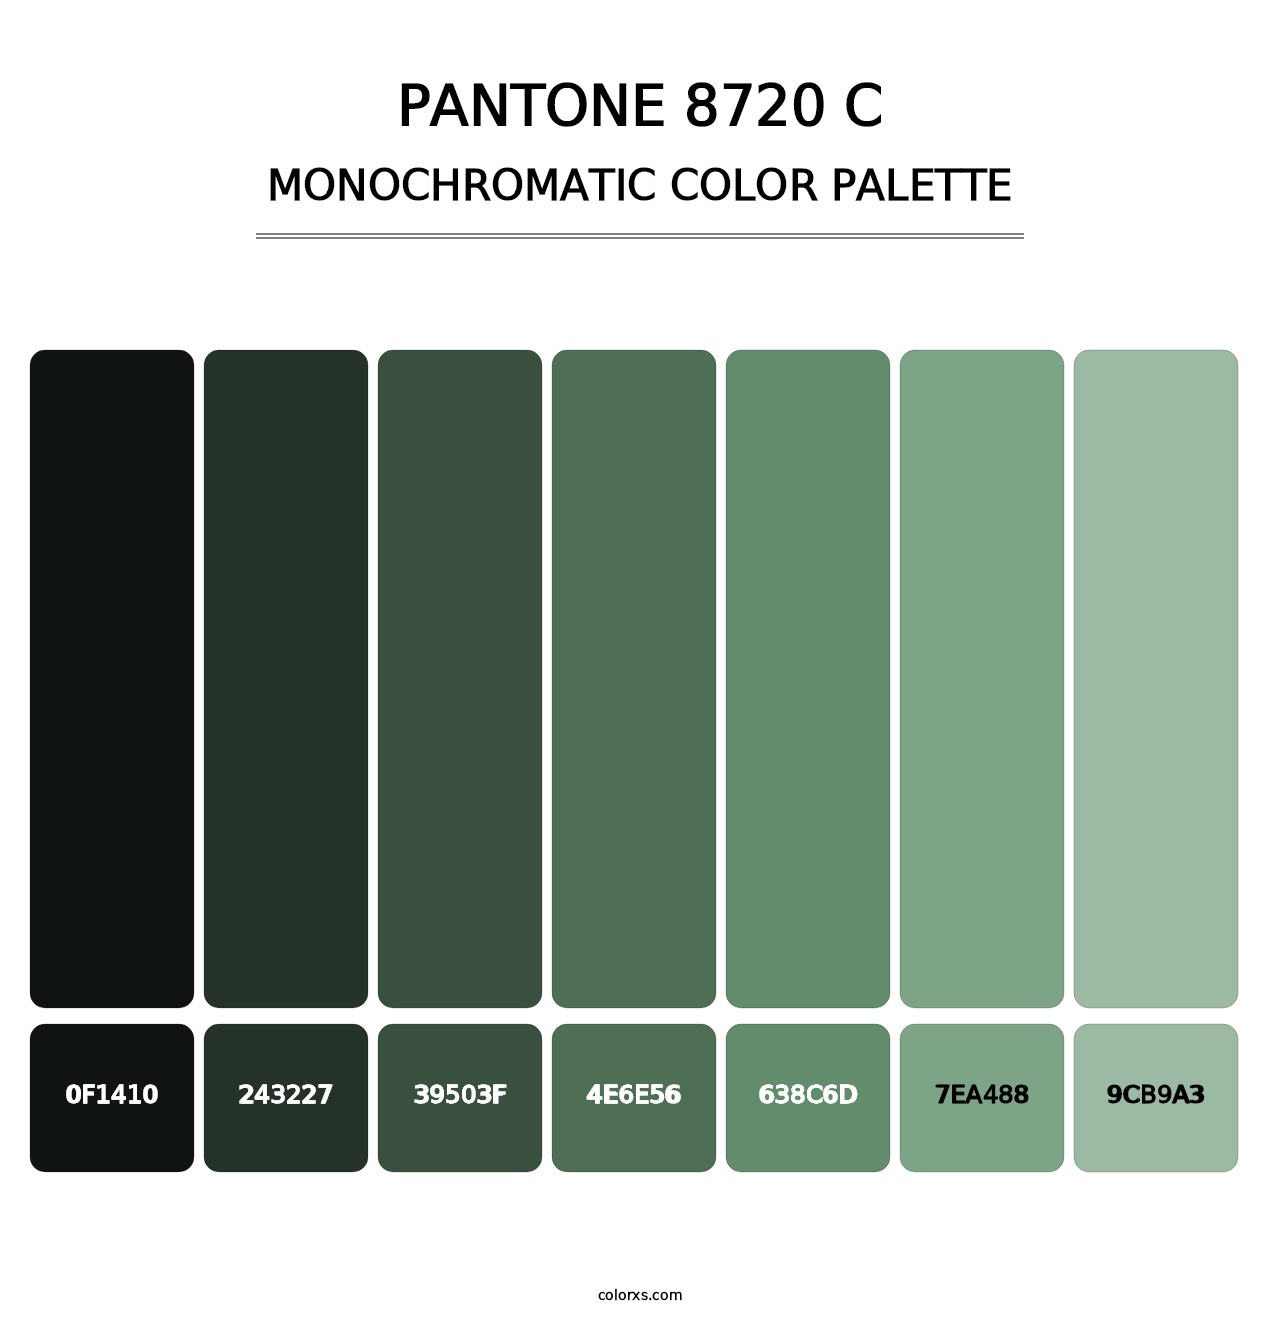 PANTONE 8720 C - Monochromatic Color Palette